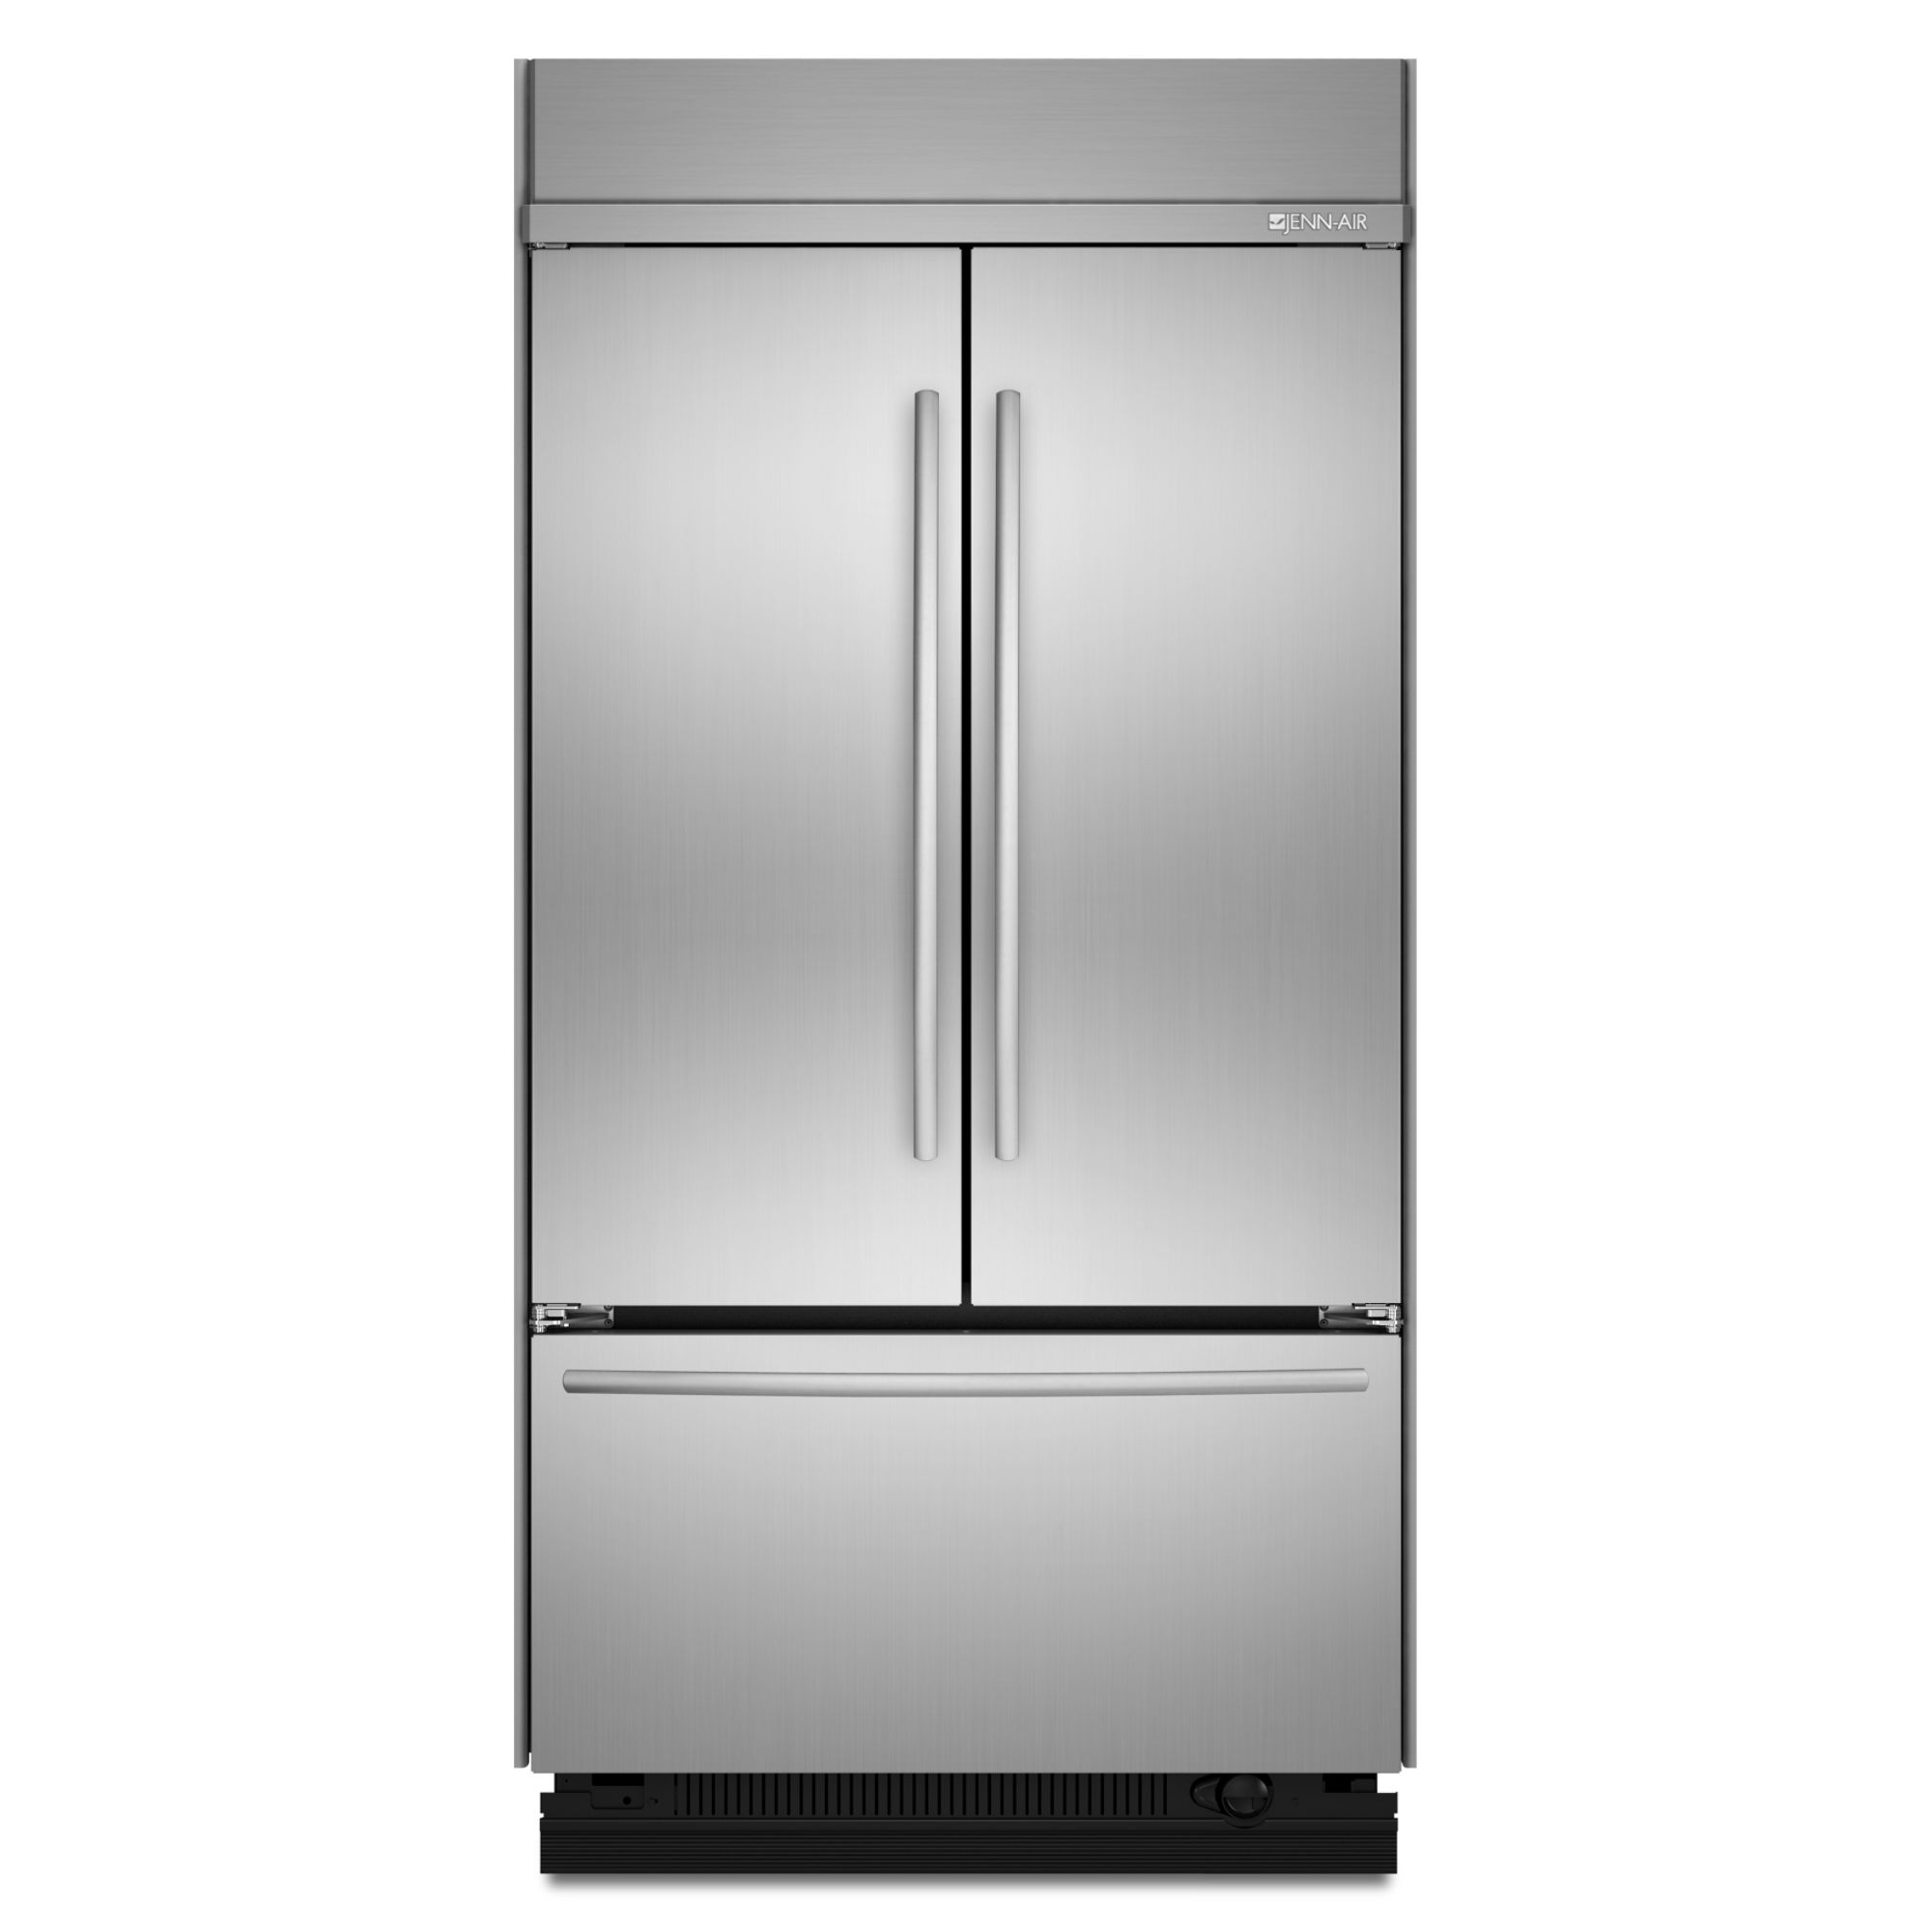 42" Built-In Refrigerator logo